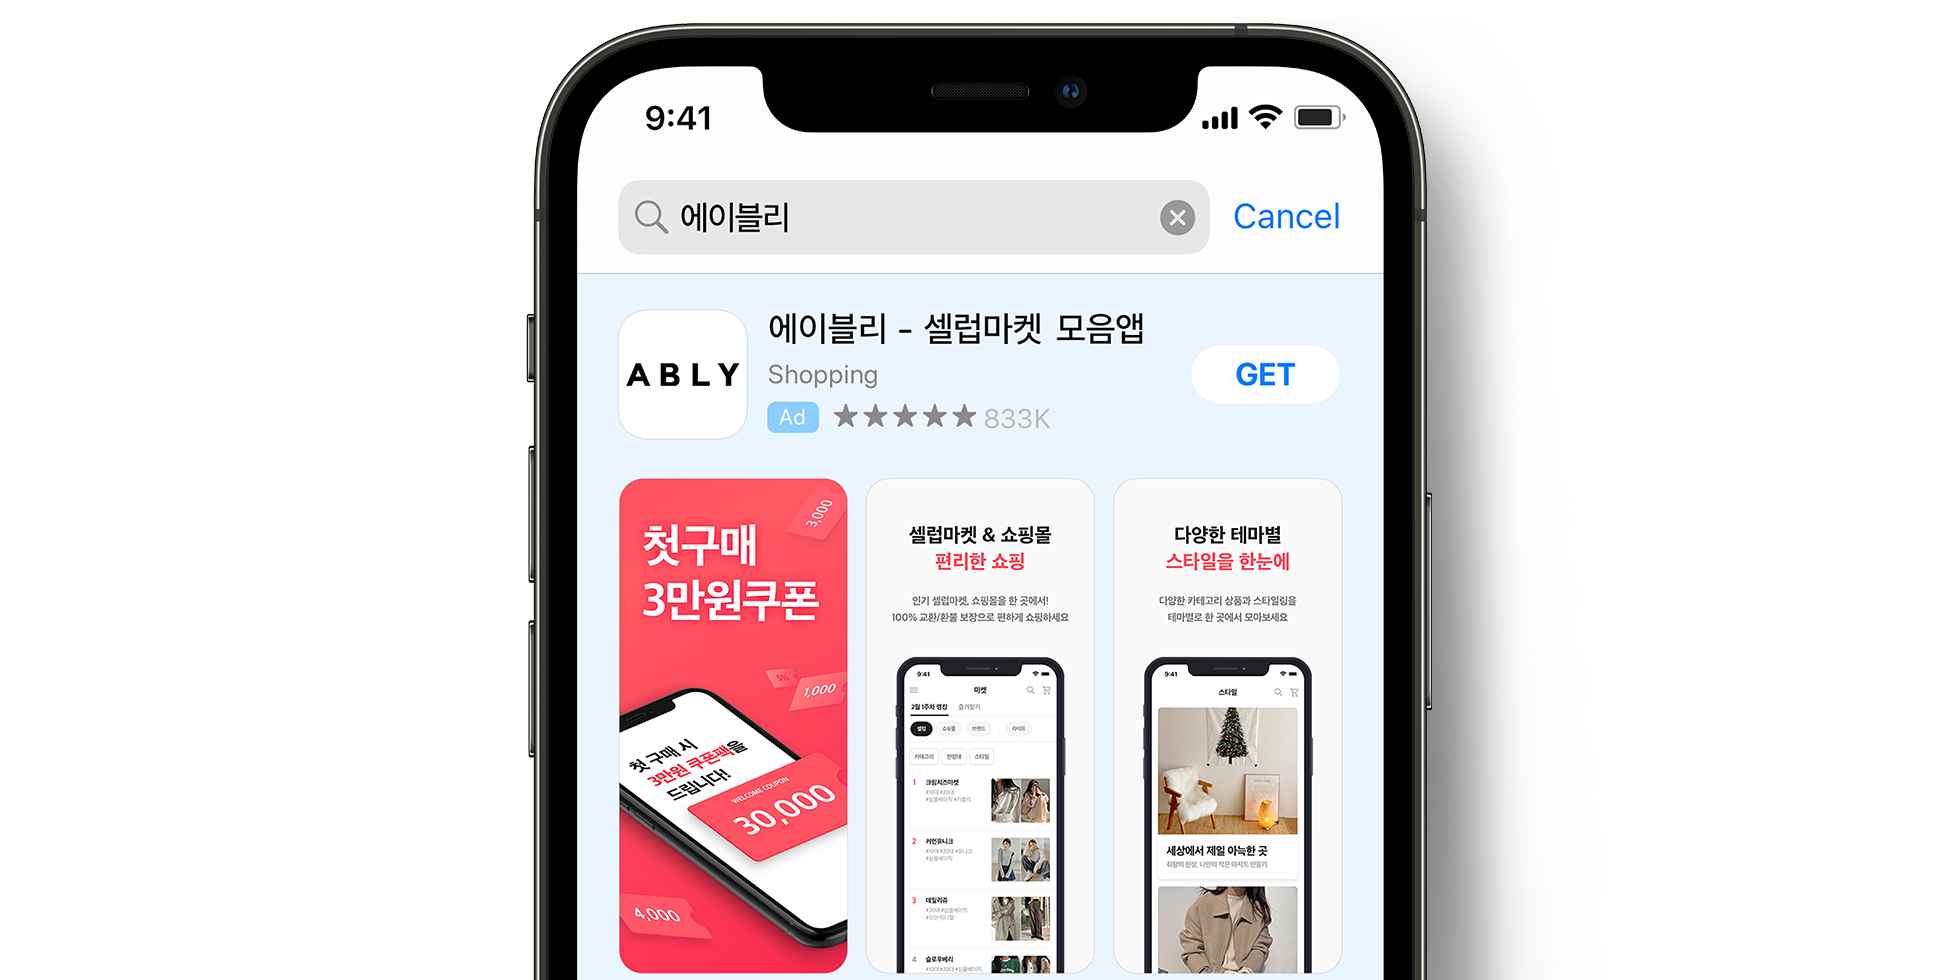 Annuncio di ABLY nell’App Store